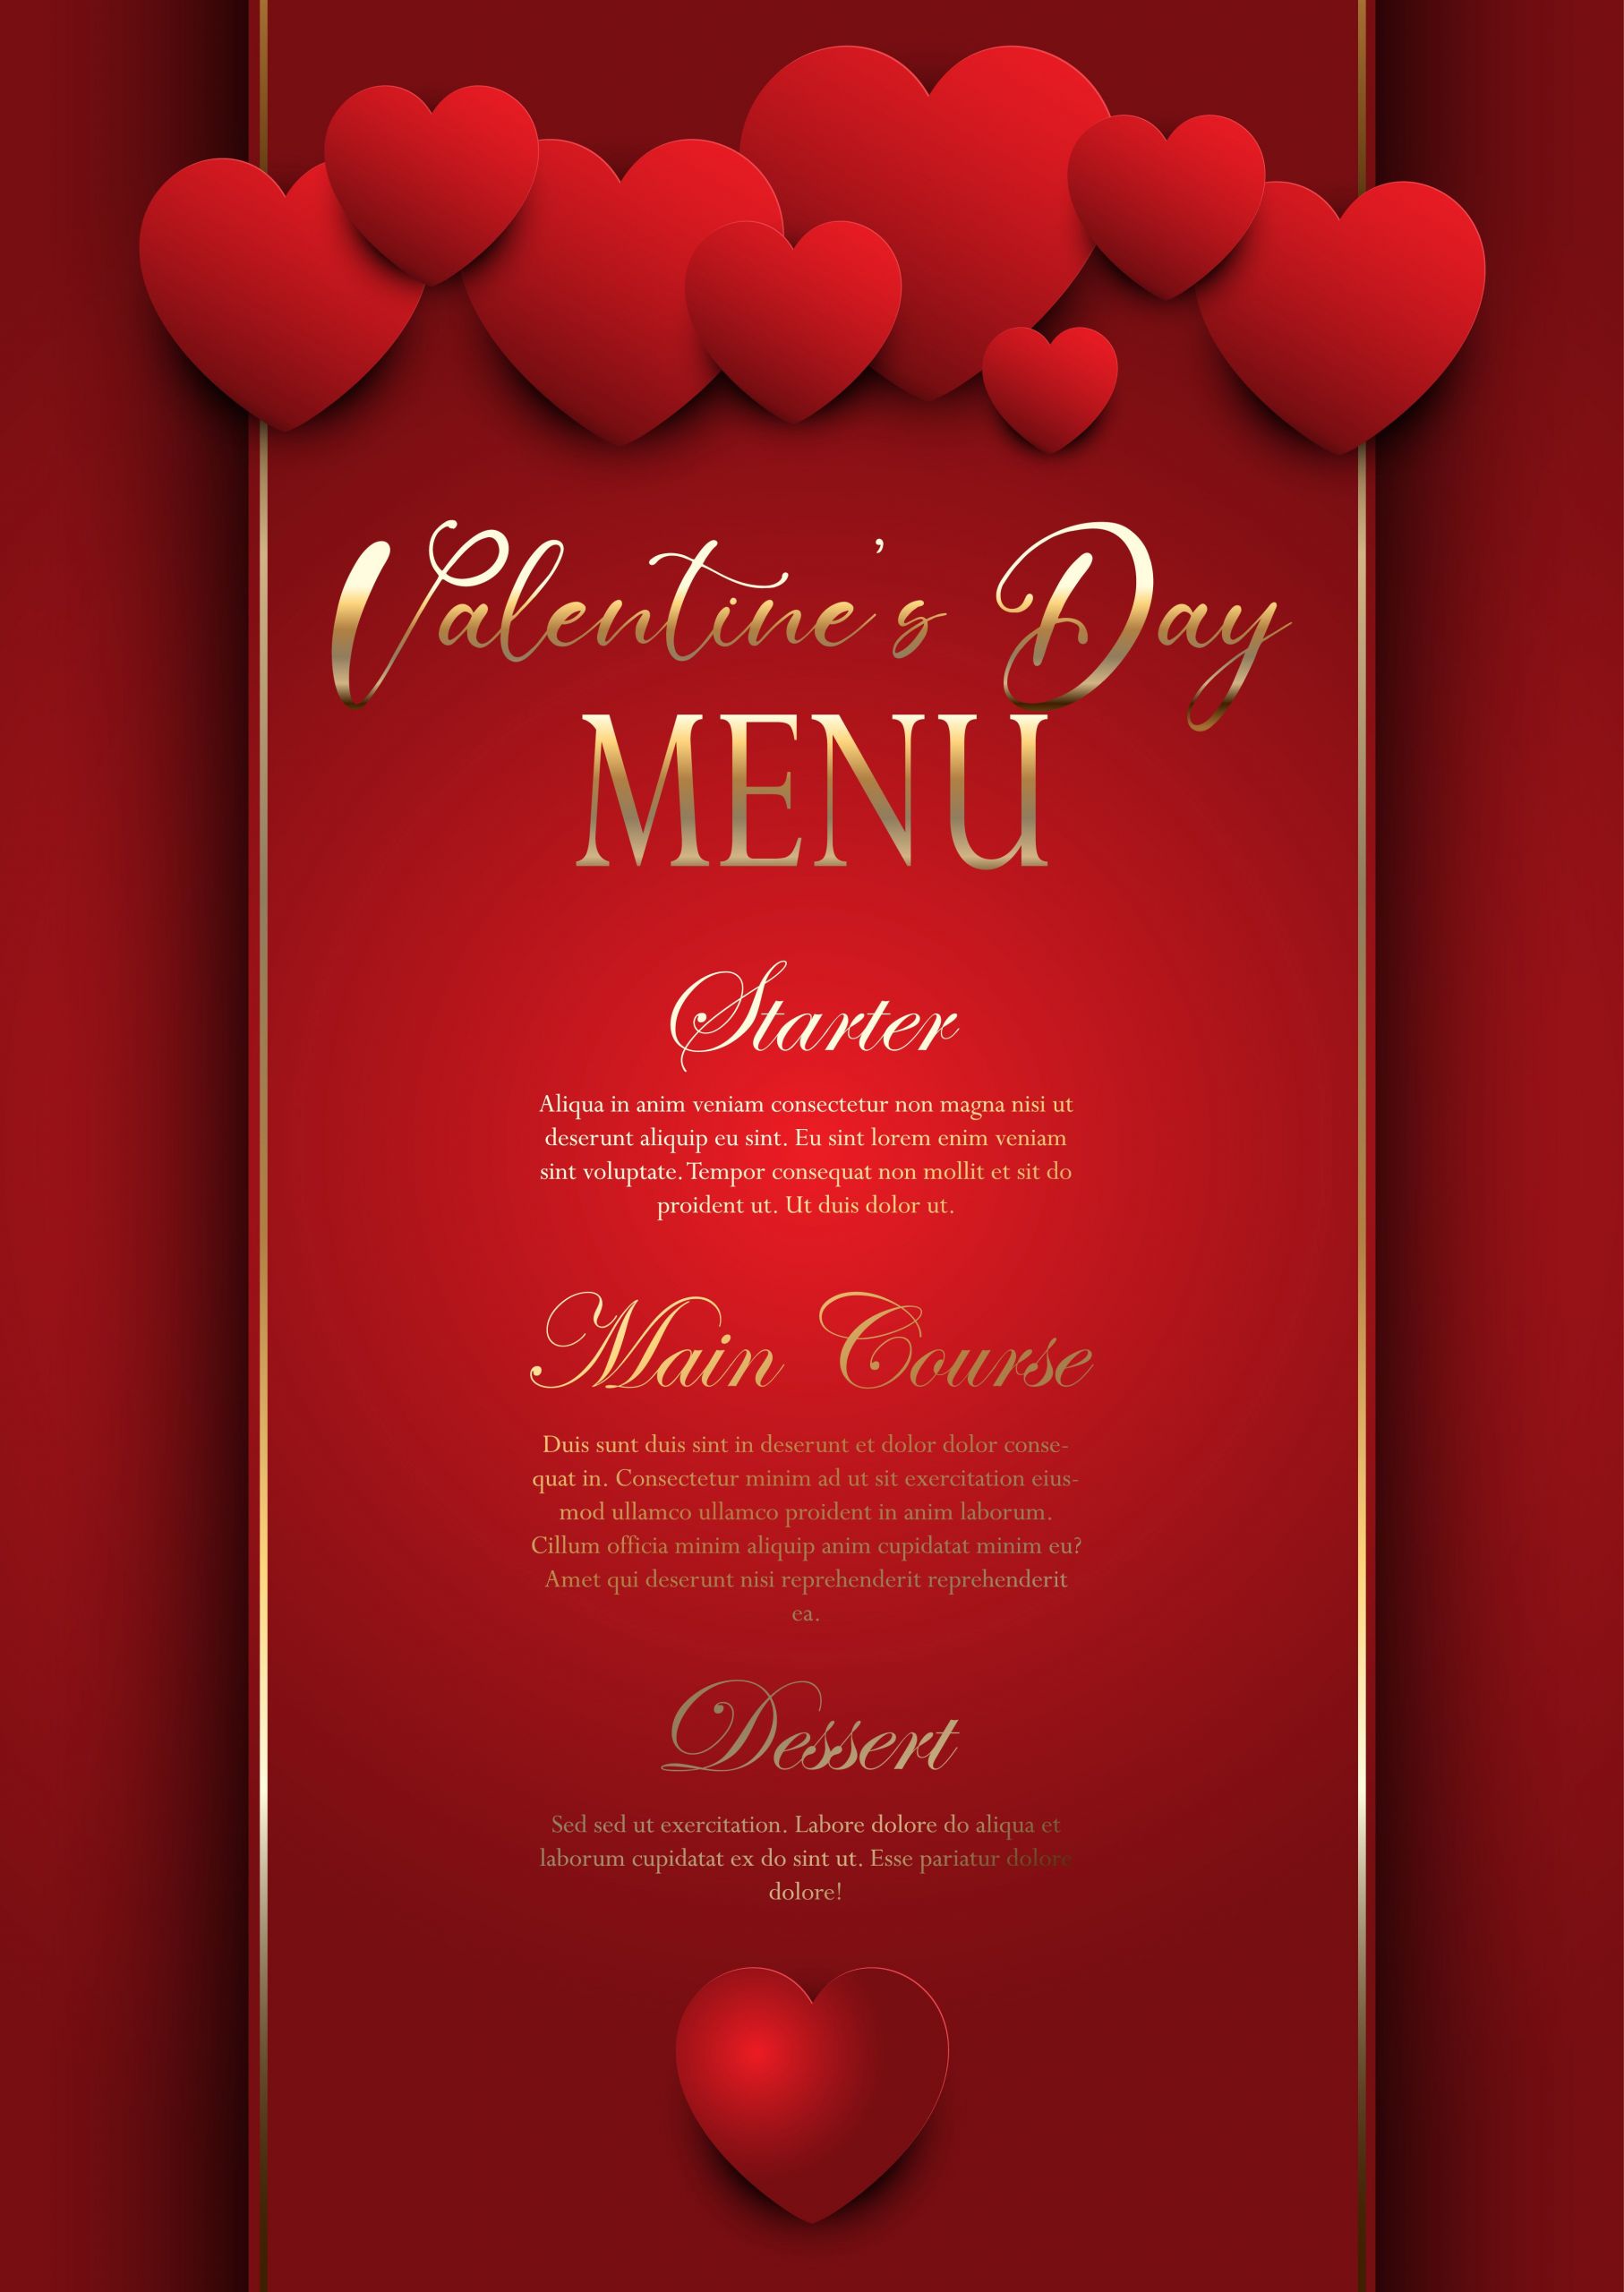 Valentines Day Design
 Valentines Day elegant menu design Download Free